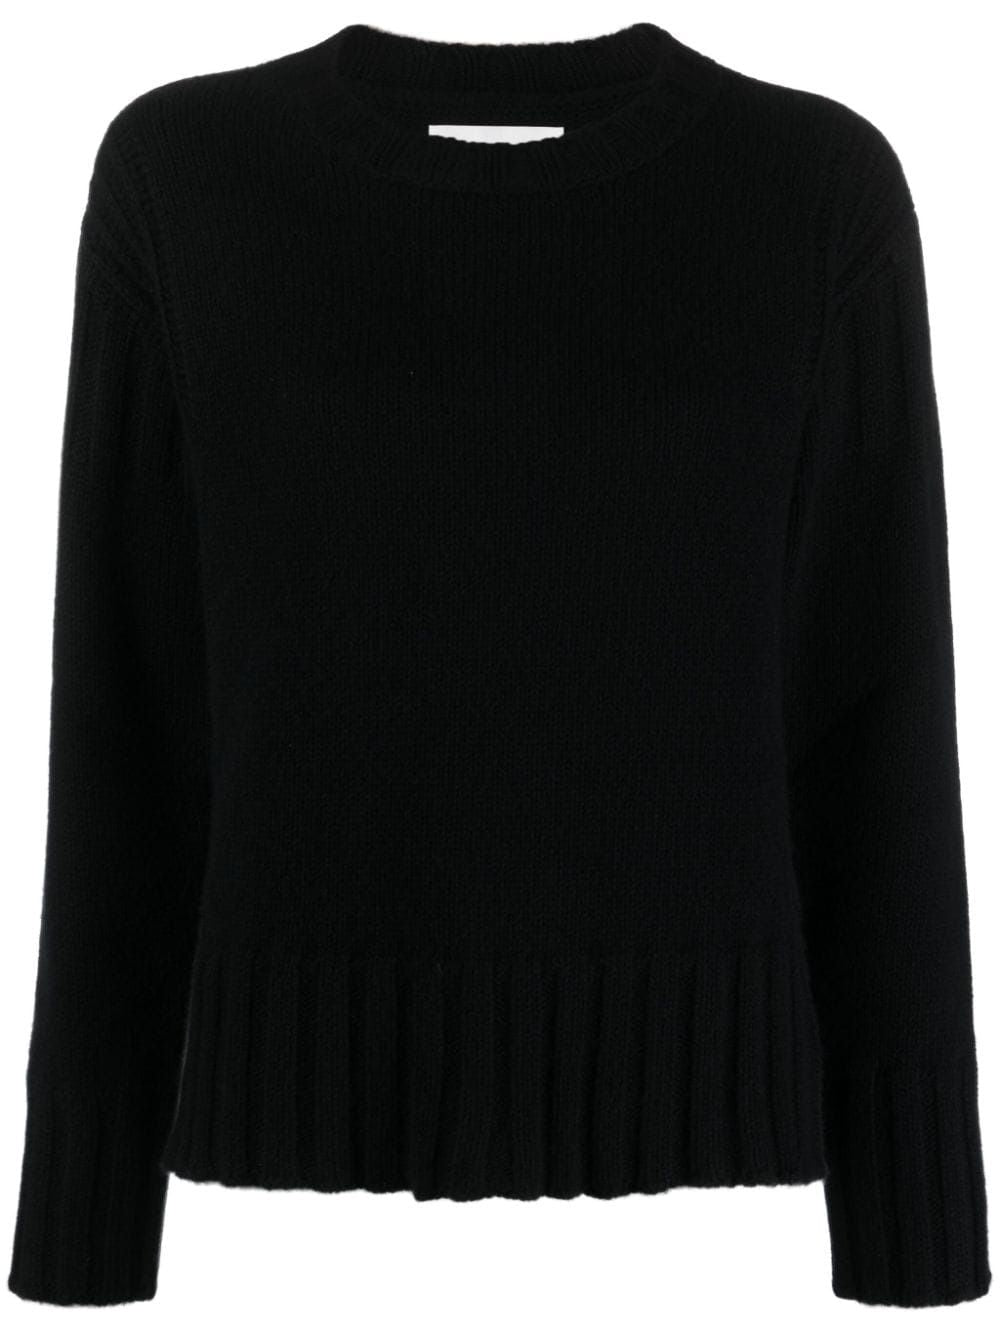 俐落時尚的黑色網紋羊毛衫 - FW23系列